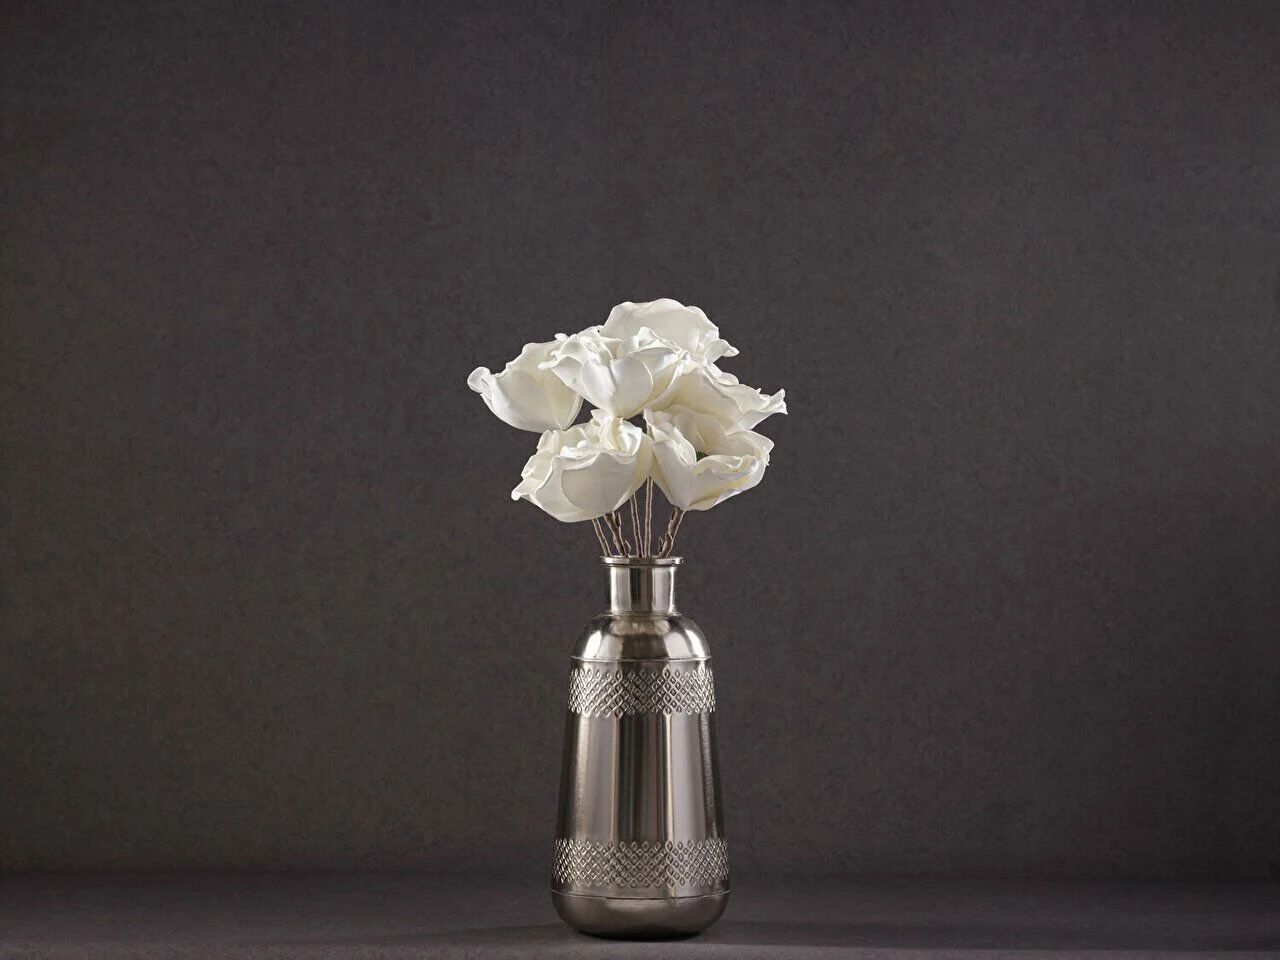 Yapay Çiçek A01 Lkm19-111 Standart - Beyaz